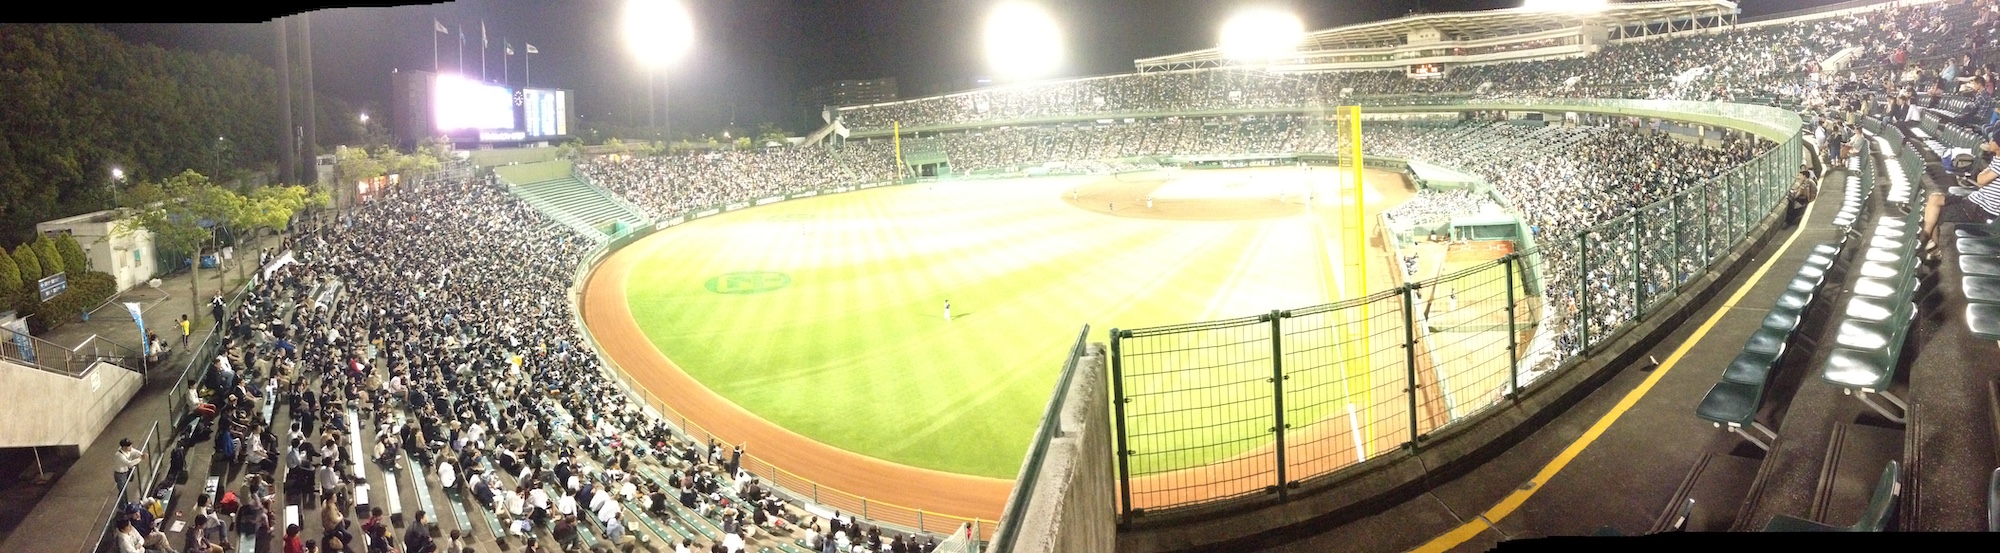 21年 ほっともっとフィールド神戸 開催のプロ野球公式戦 Sse Notes